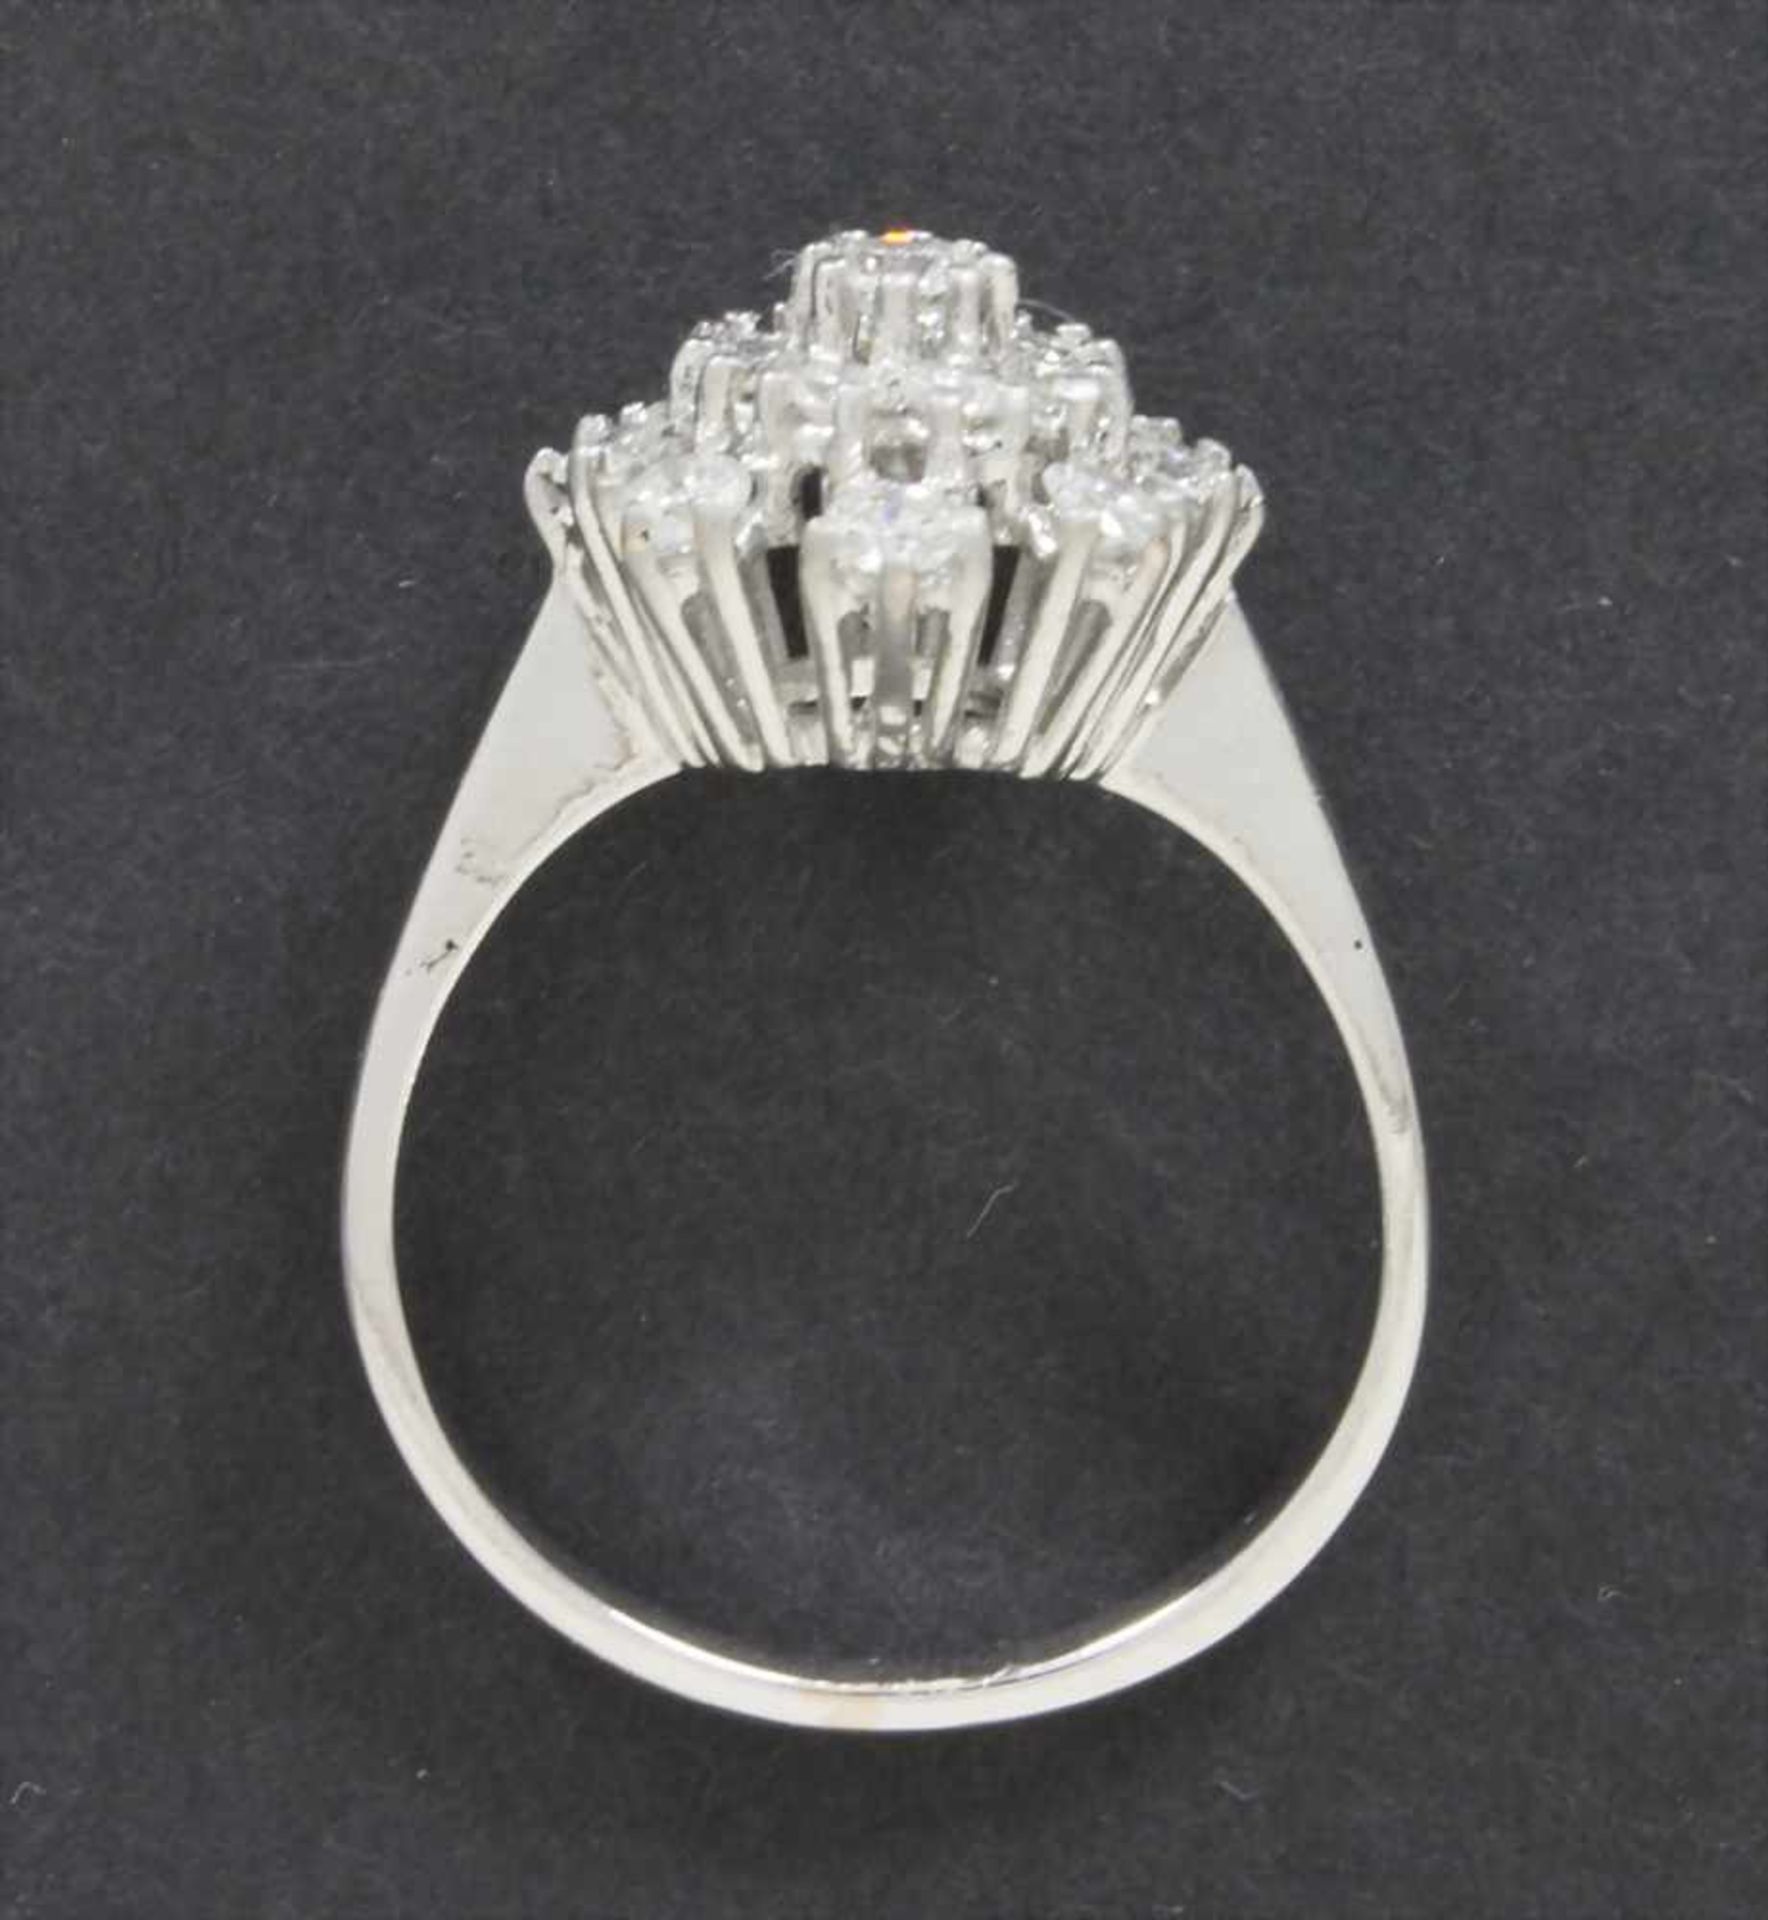 Dreistufiger Brillant-Ring / A brilliant ringMaterial: Weißgold Au 585/000 14 Kt, 17 Brillanten zus. - Bild 2 aus 2